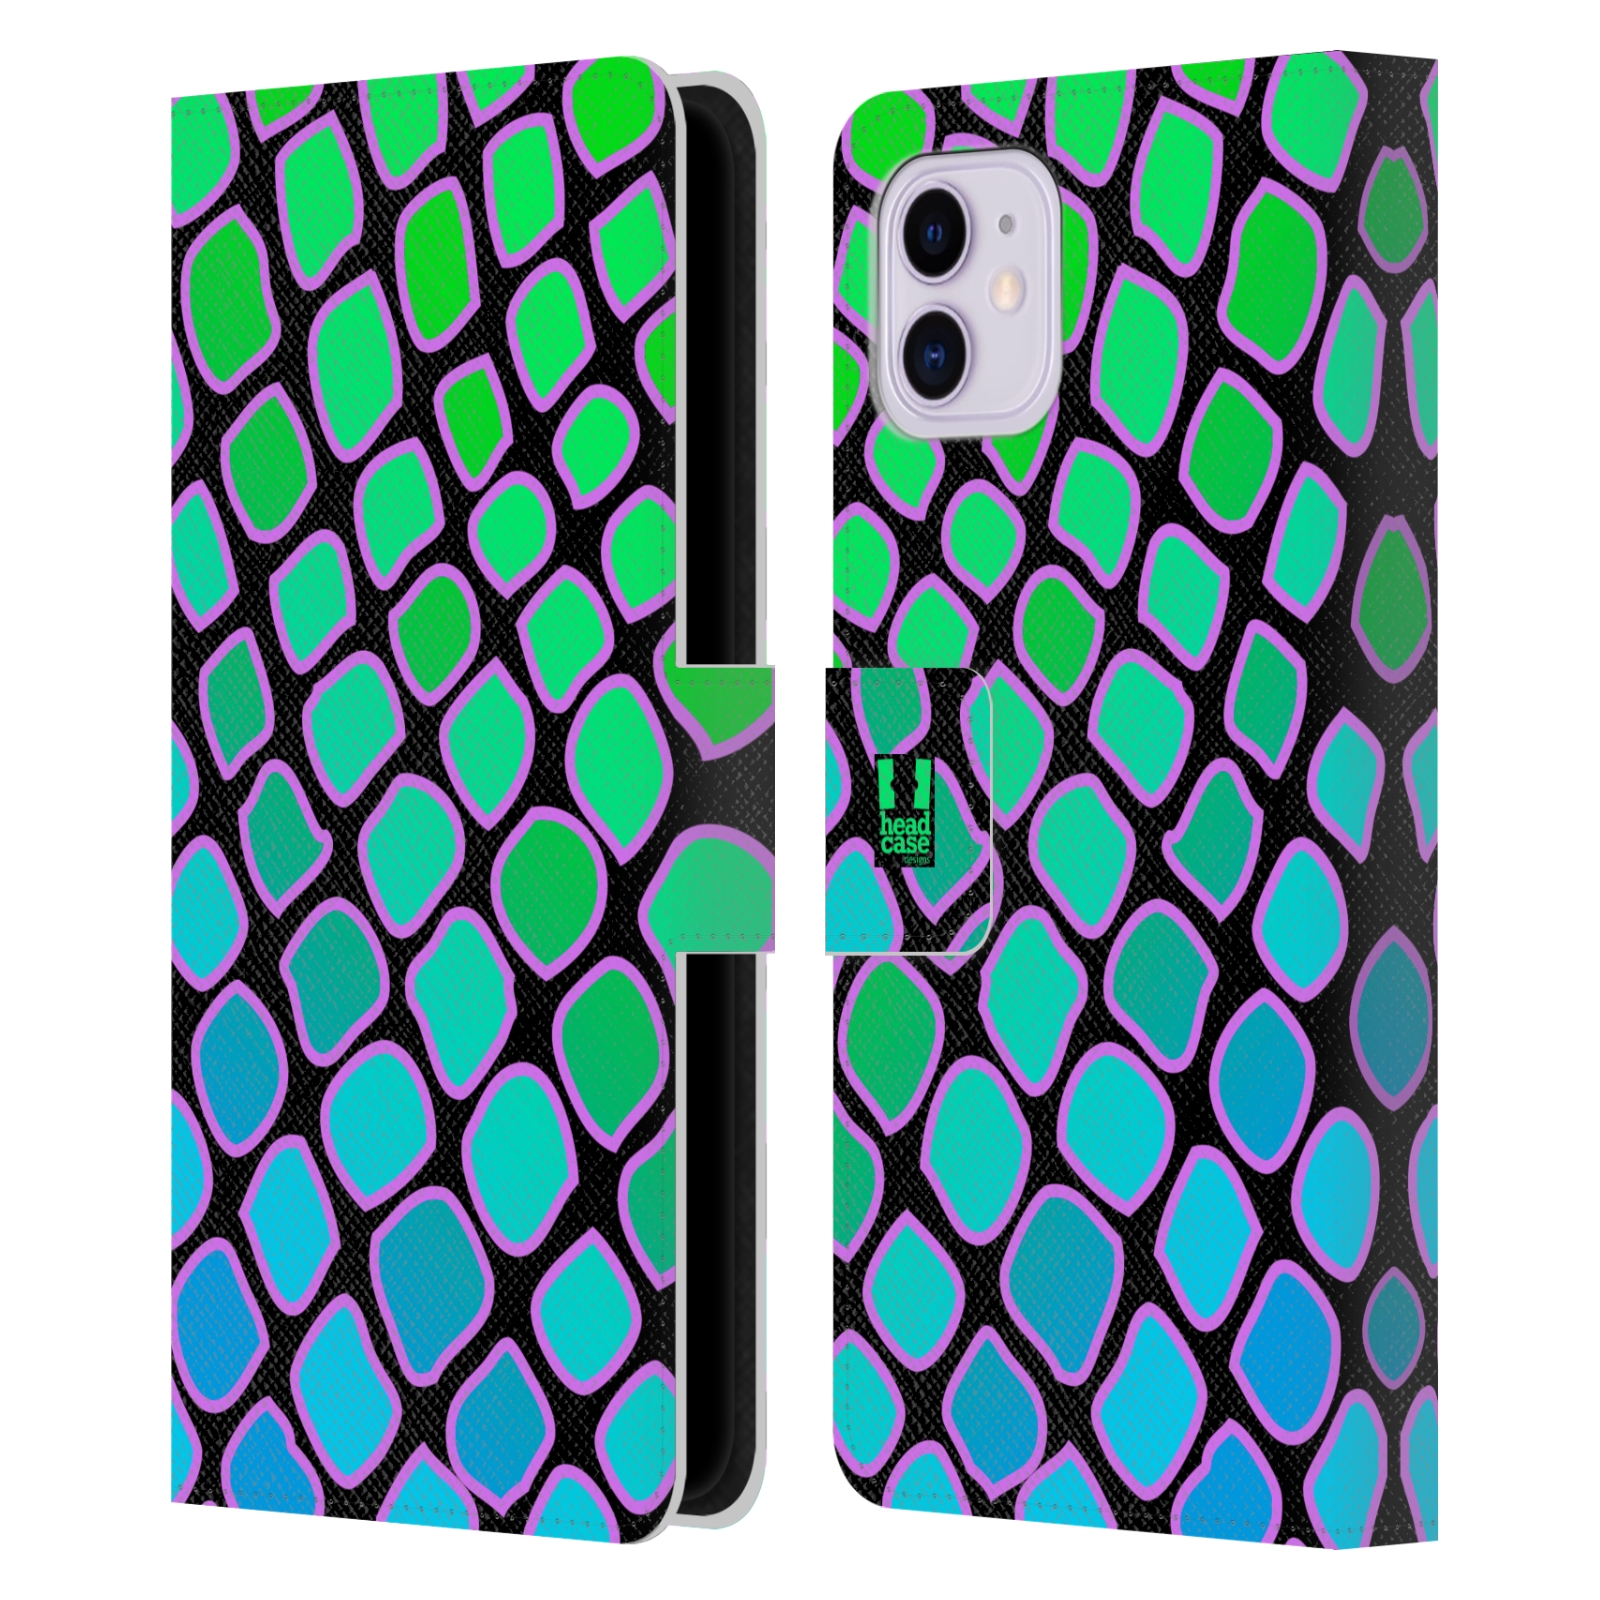 Pouzdro na mobil Apple Iphone 11 Zvířecí barevné vzory vodní had modrá a zelená barva AQUA